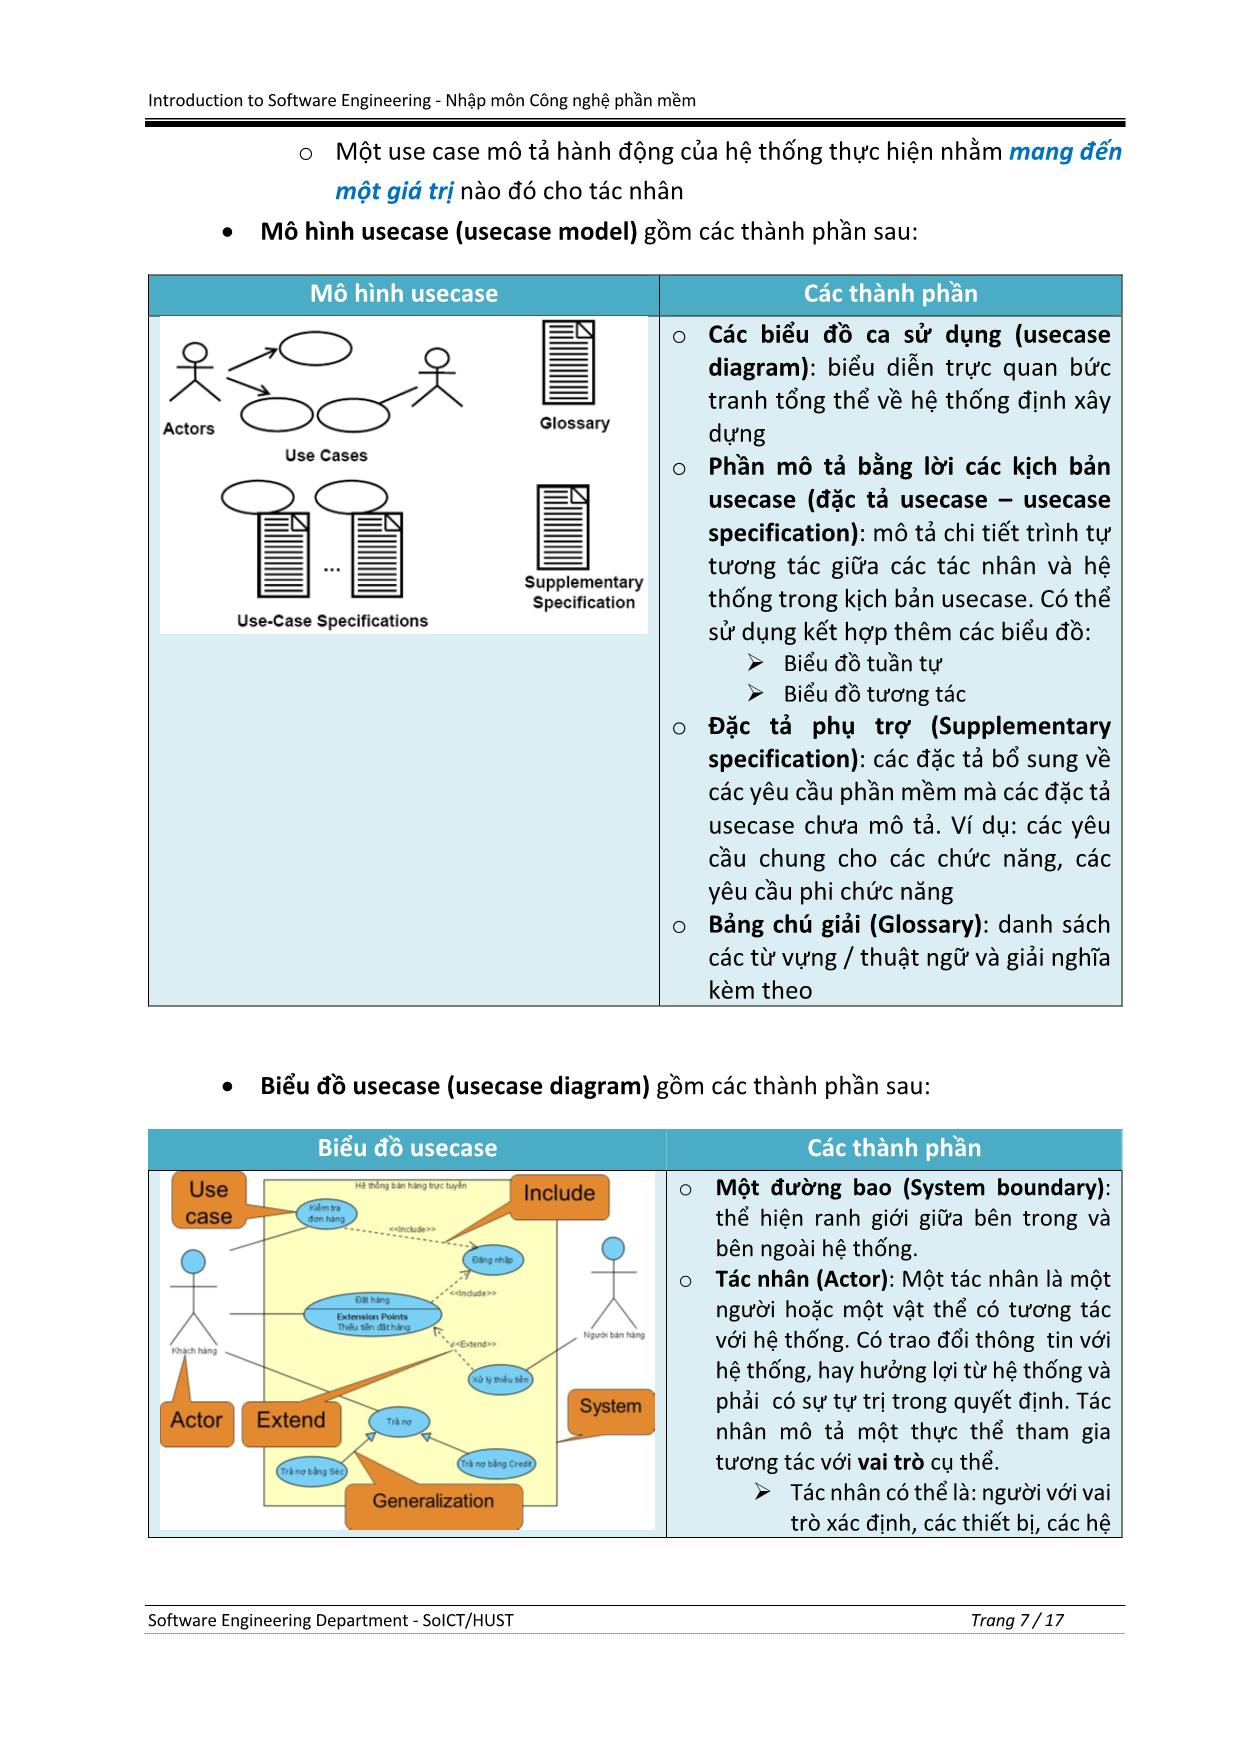 Bài tập Nhập môn Công nghệ phần mềm - Tuần 6: Kỹ nghệ yêu cầu phần mềm (Requirement Engineering) trang 7